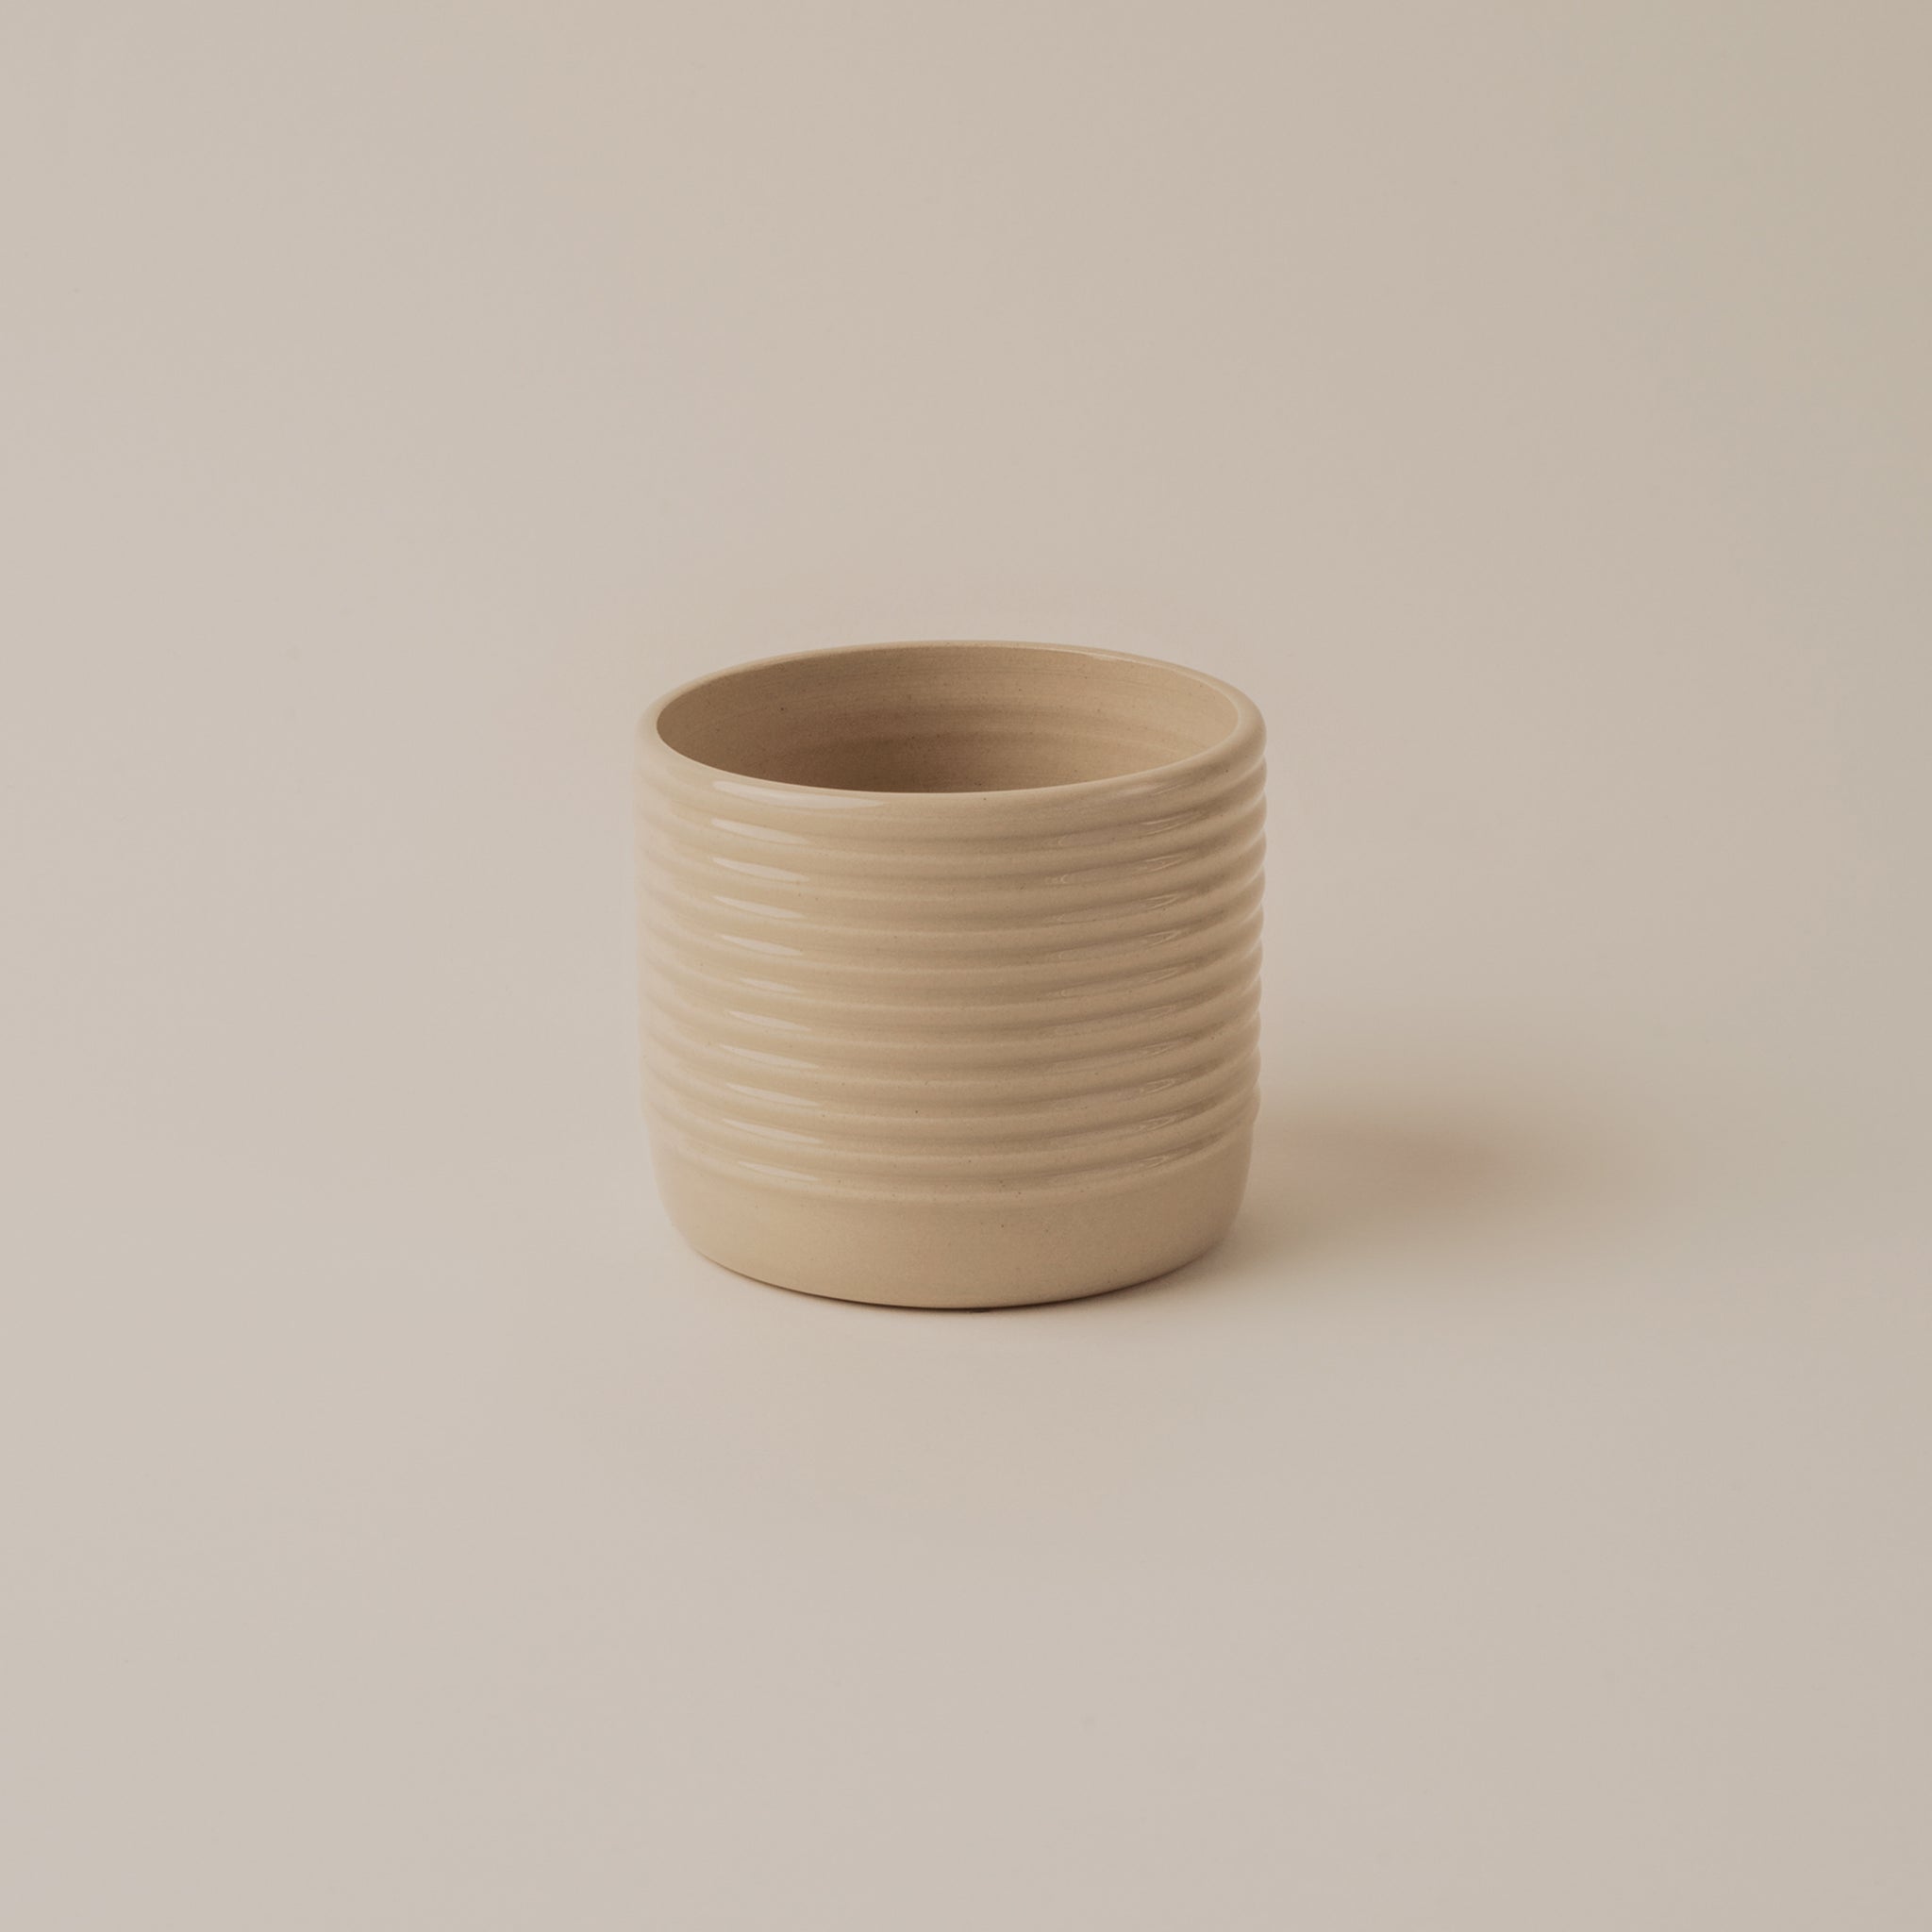 kleine Tee Tasse handgemacht aus Ton in Berlin Prenzlauer Berg clai studio